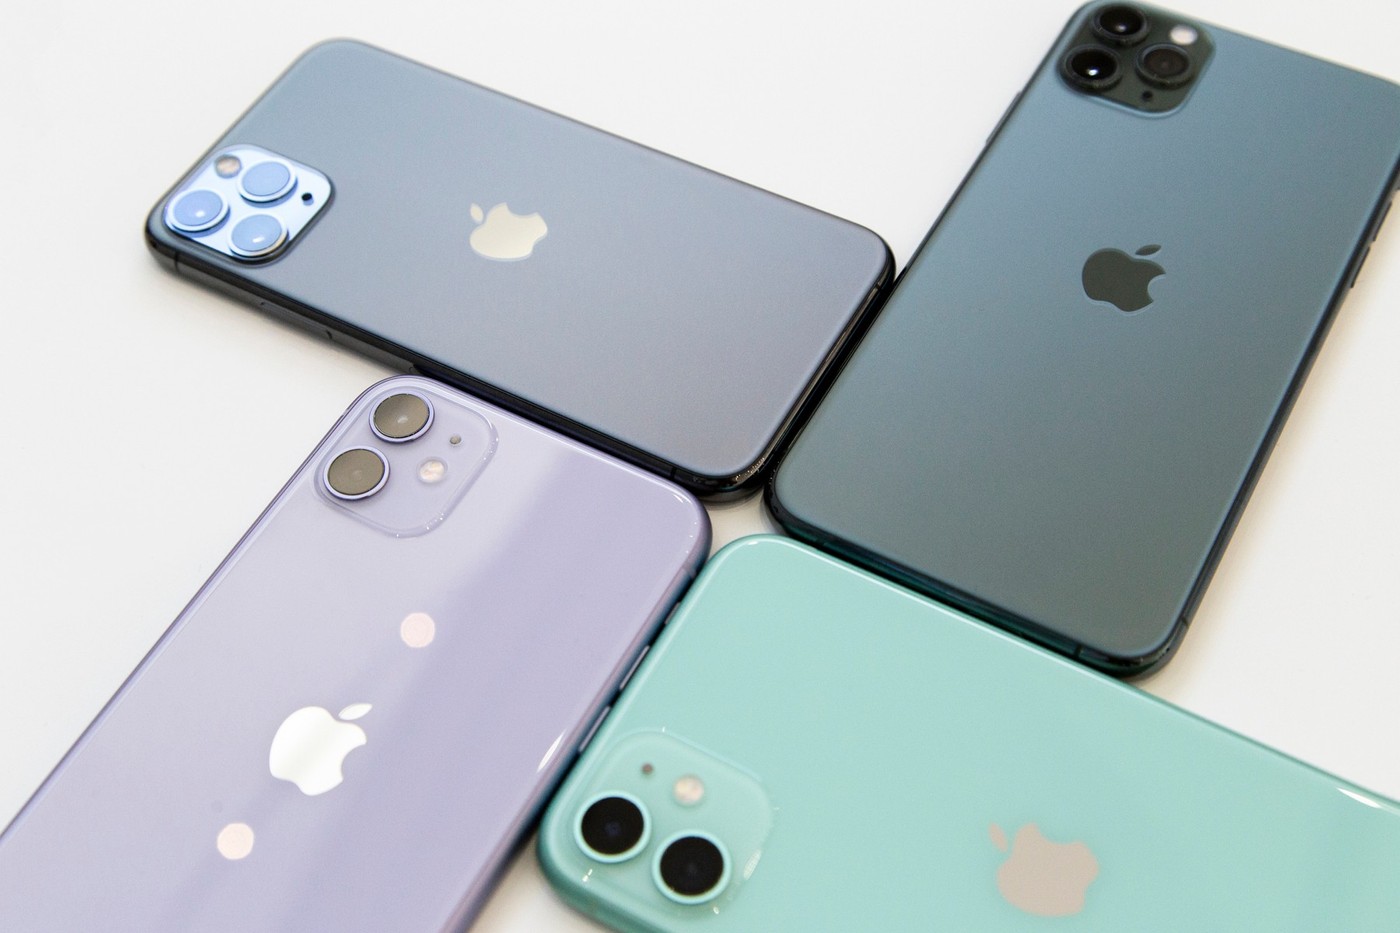 傲世皇朝在线登录 苹果的5G iphone可能要到2021年才能上市